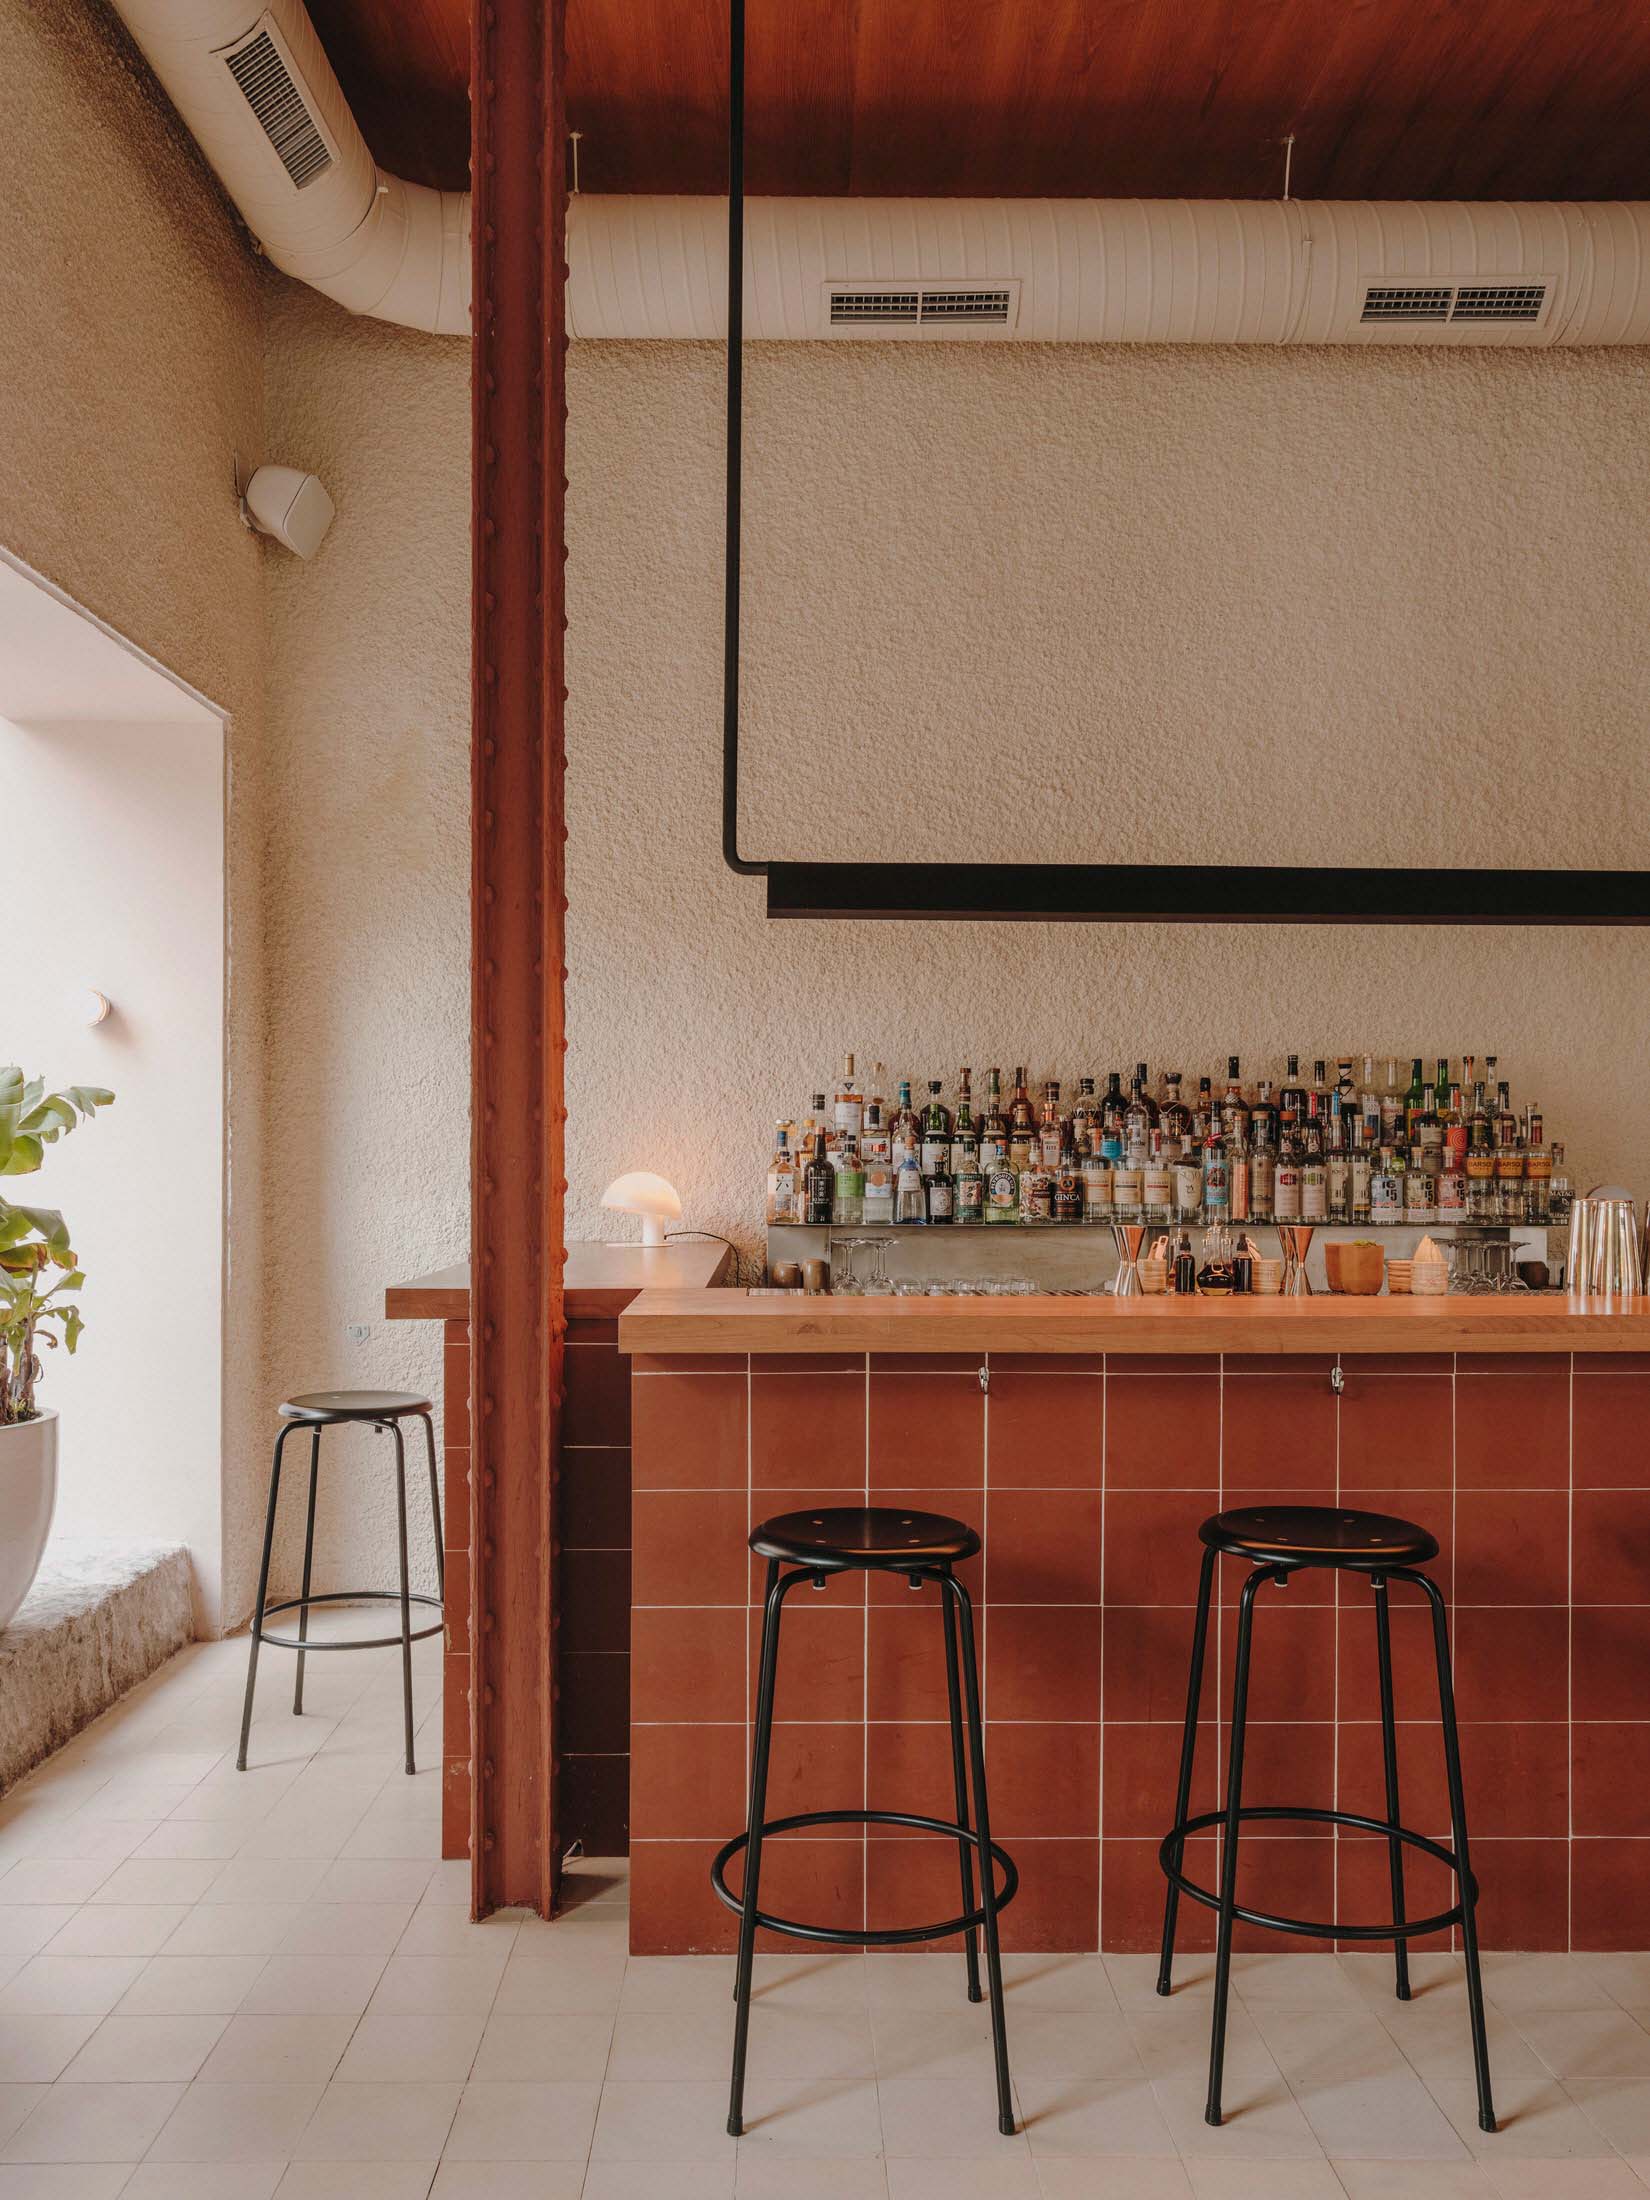 酒吧设计,酒吧设计案例,现代风格酒吧设计,酒吧设计方案,马德里,墨西哥,70㎡,Plantea Estudio,鸡尾酒酒吧,酒吧&餐厅